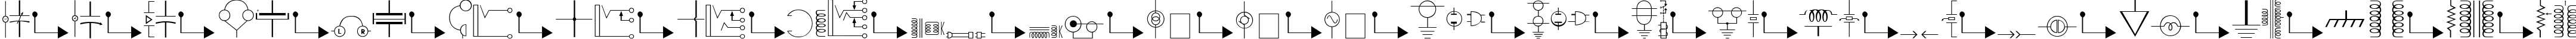 Пример написания английского алфавита шрифтом Carr Electronic Dingbats